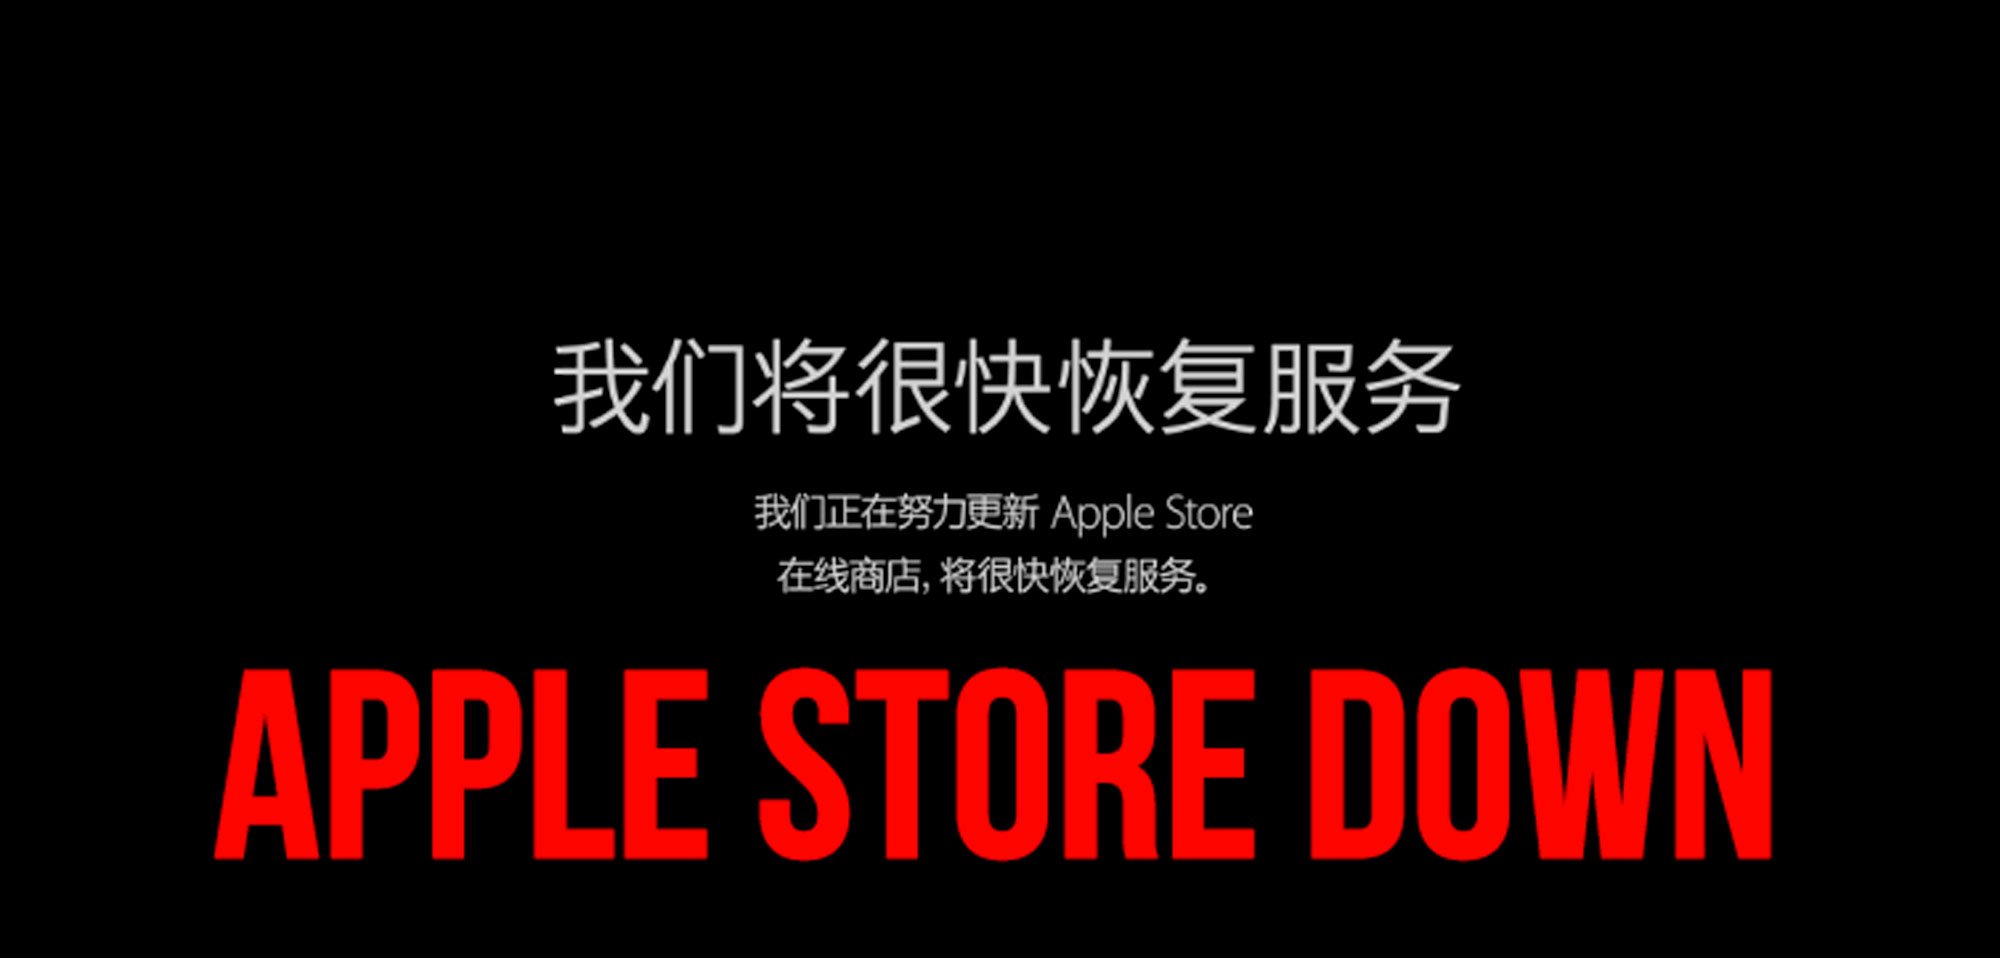 APPLE STORE DOWN: Vorbereitung iPhone 6S Verkauf heute ab 09:01 Uhr 3